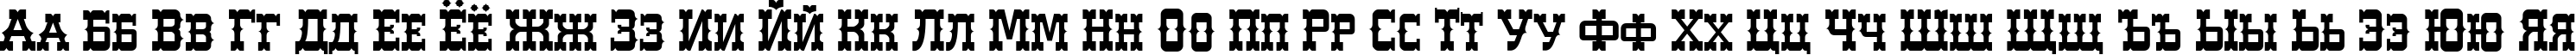 Пример написания русского алфавита шрифтом WesterlandC Normal